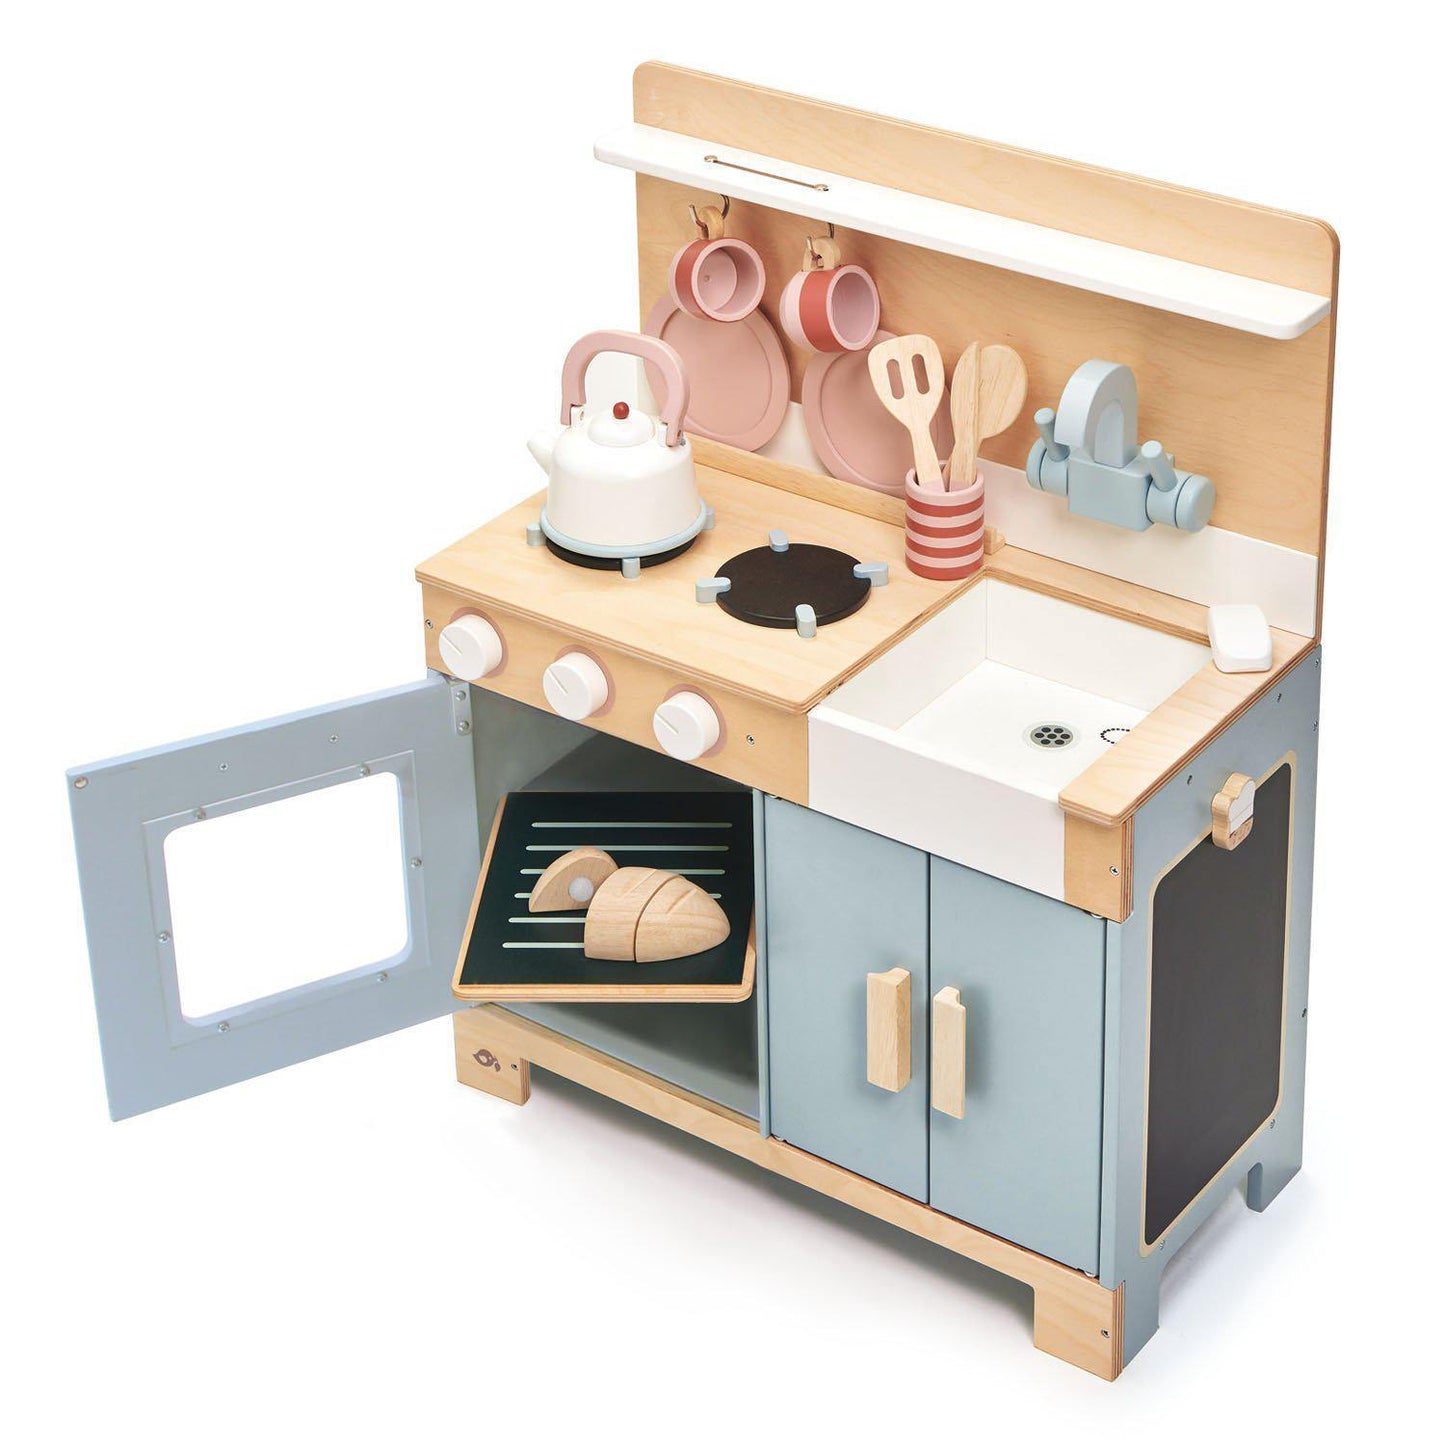 Kisszakács konyhabútor, prémium minőségű fából - Mini Chef Home Kitchen - teljes főző készlet - Tender Leaf Toys-Tender Leaf Toys-2-Játszma.ro - A maradandó élmények boltja